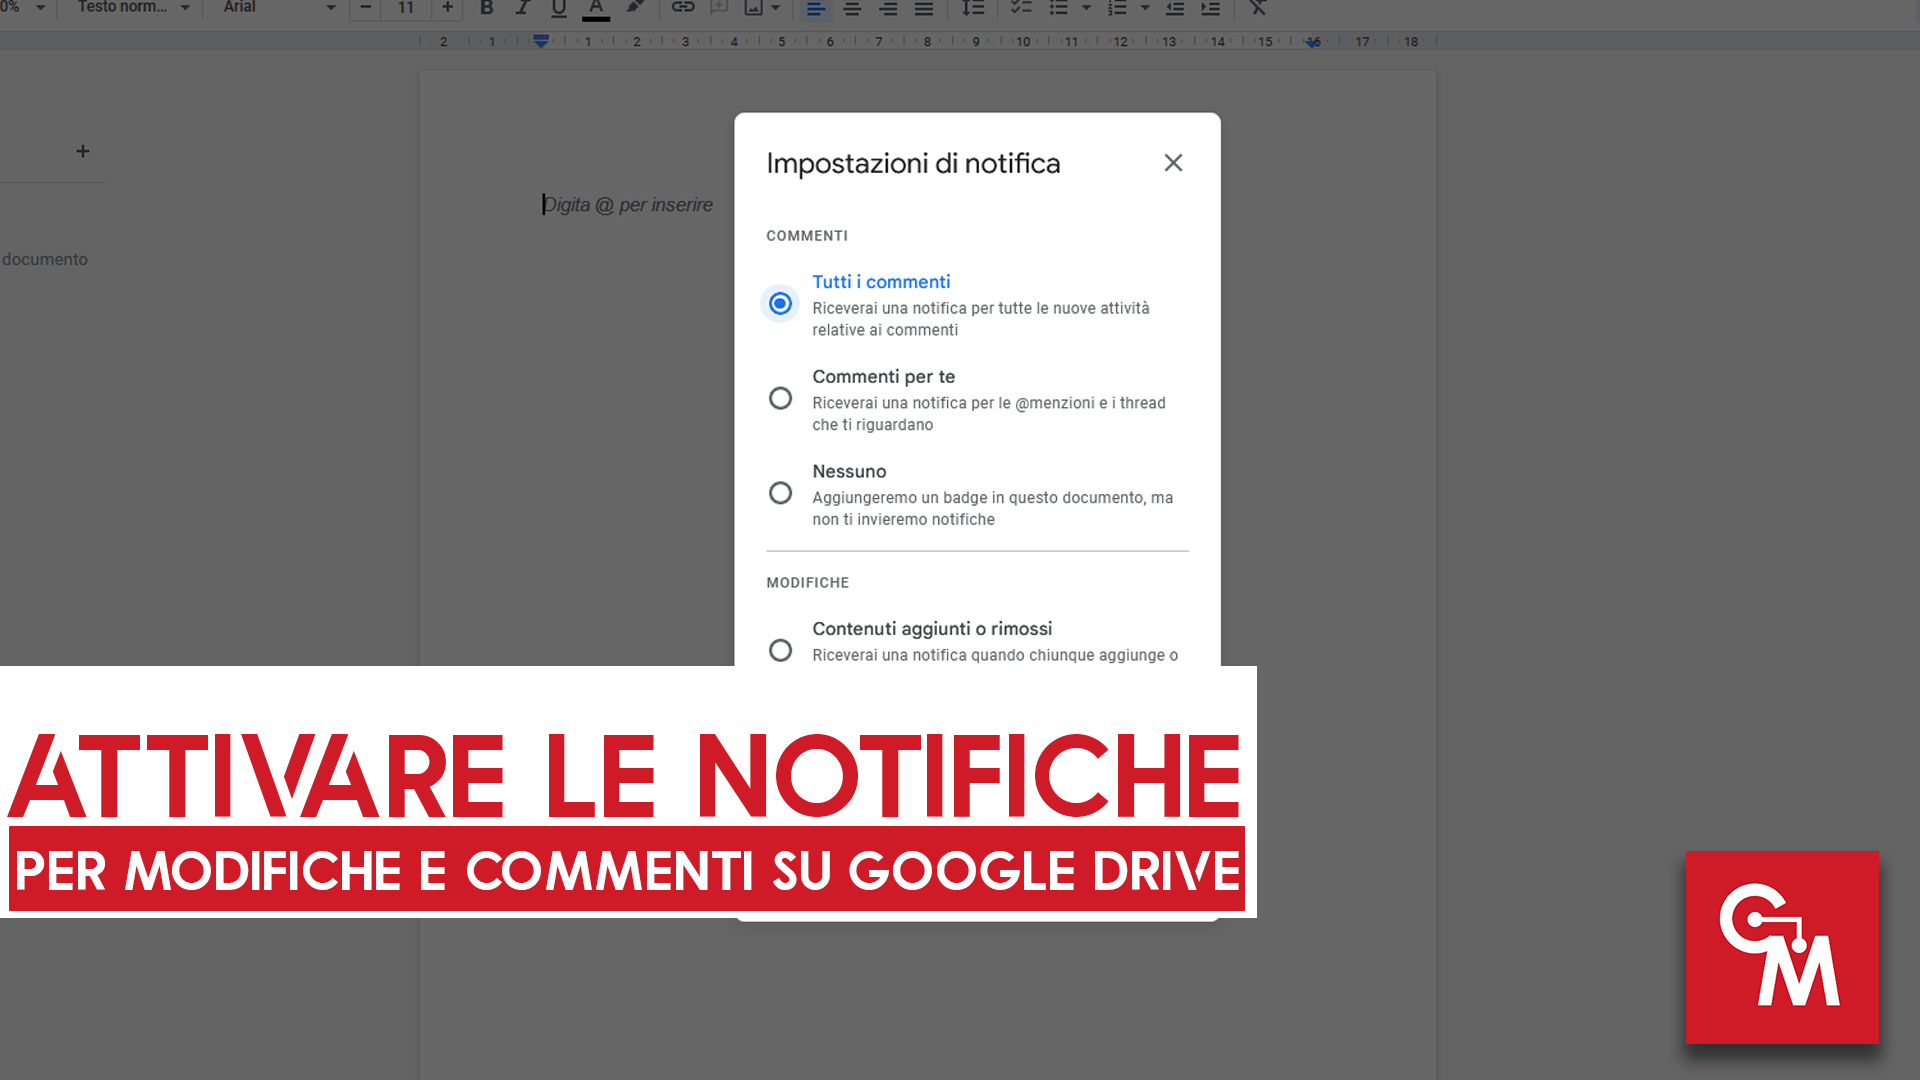 Attivare le notifiche per modifiche e commenti su Google Drive